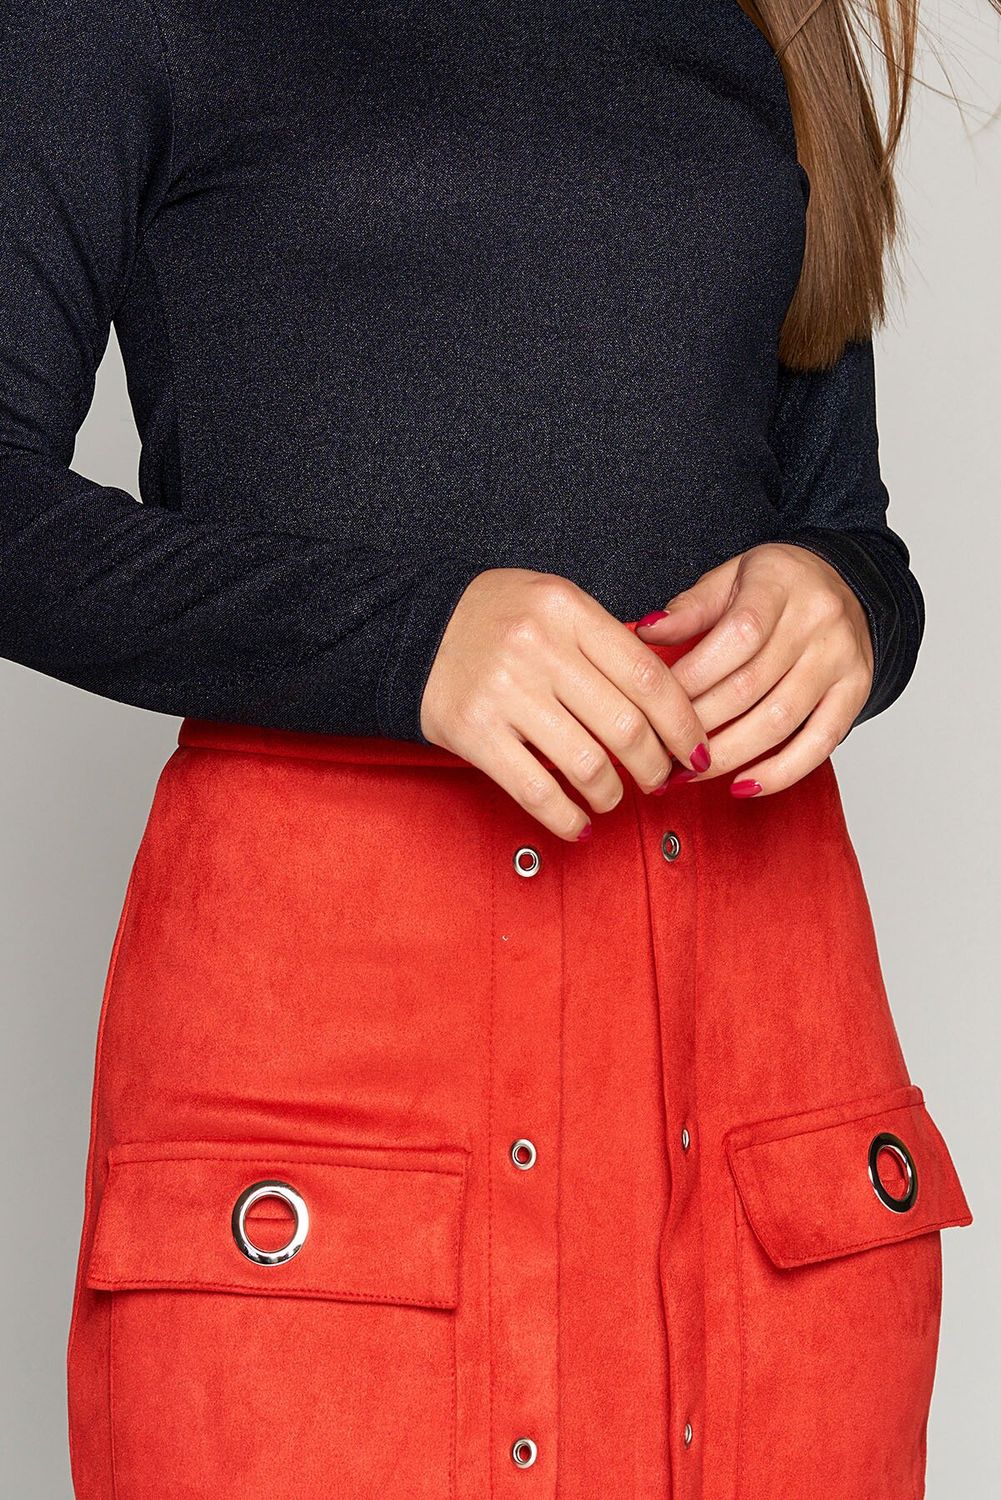 Красная замшевая юбка-карандаш в деловом стиле - фото